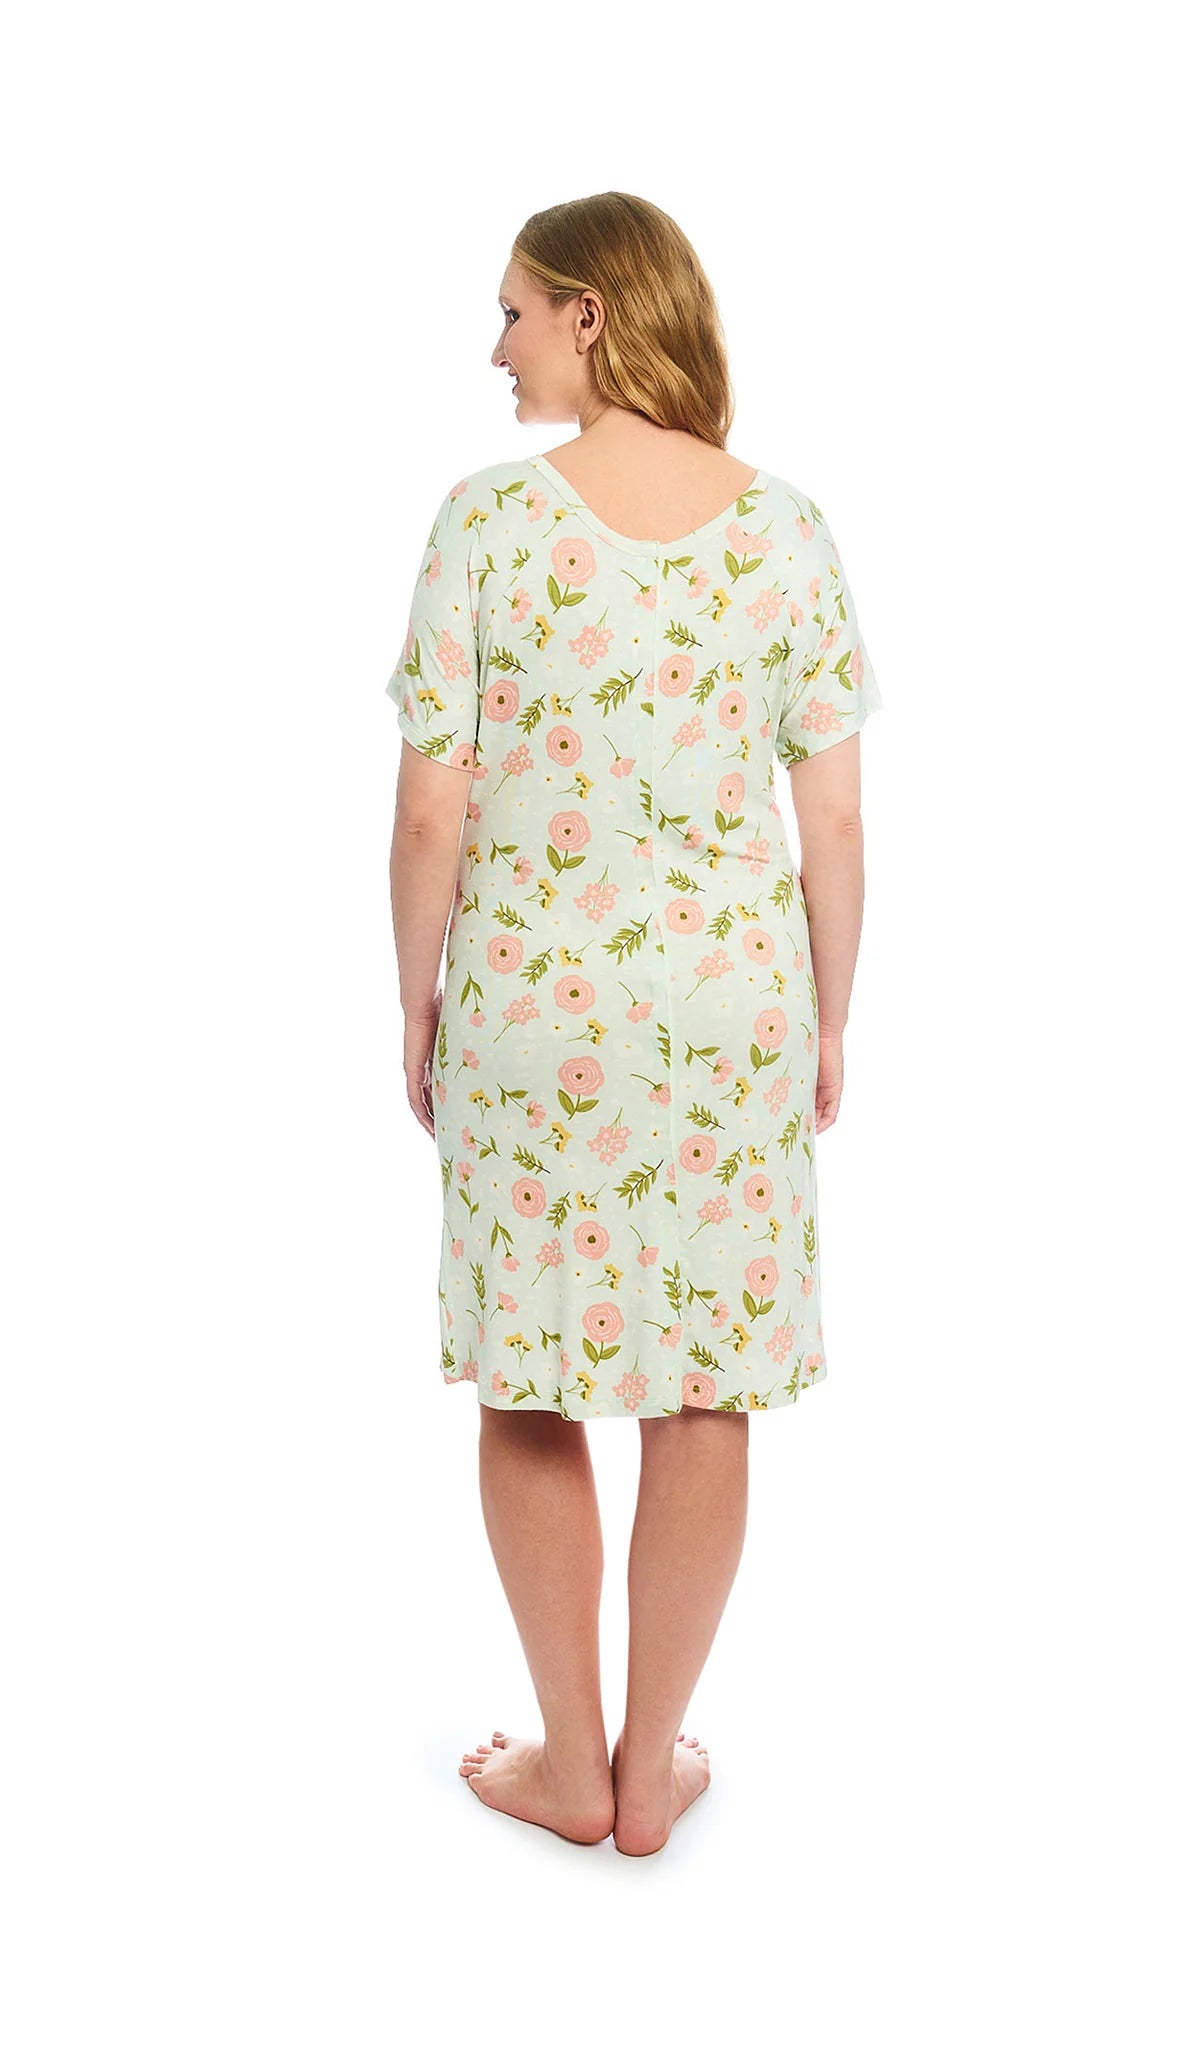 Carnation Rosa Hospital Gown  - Doodlebug's Children's Boutique